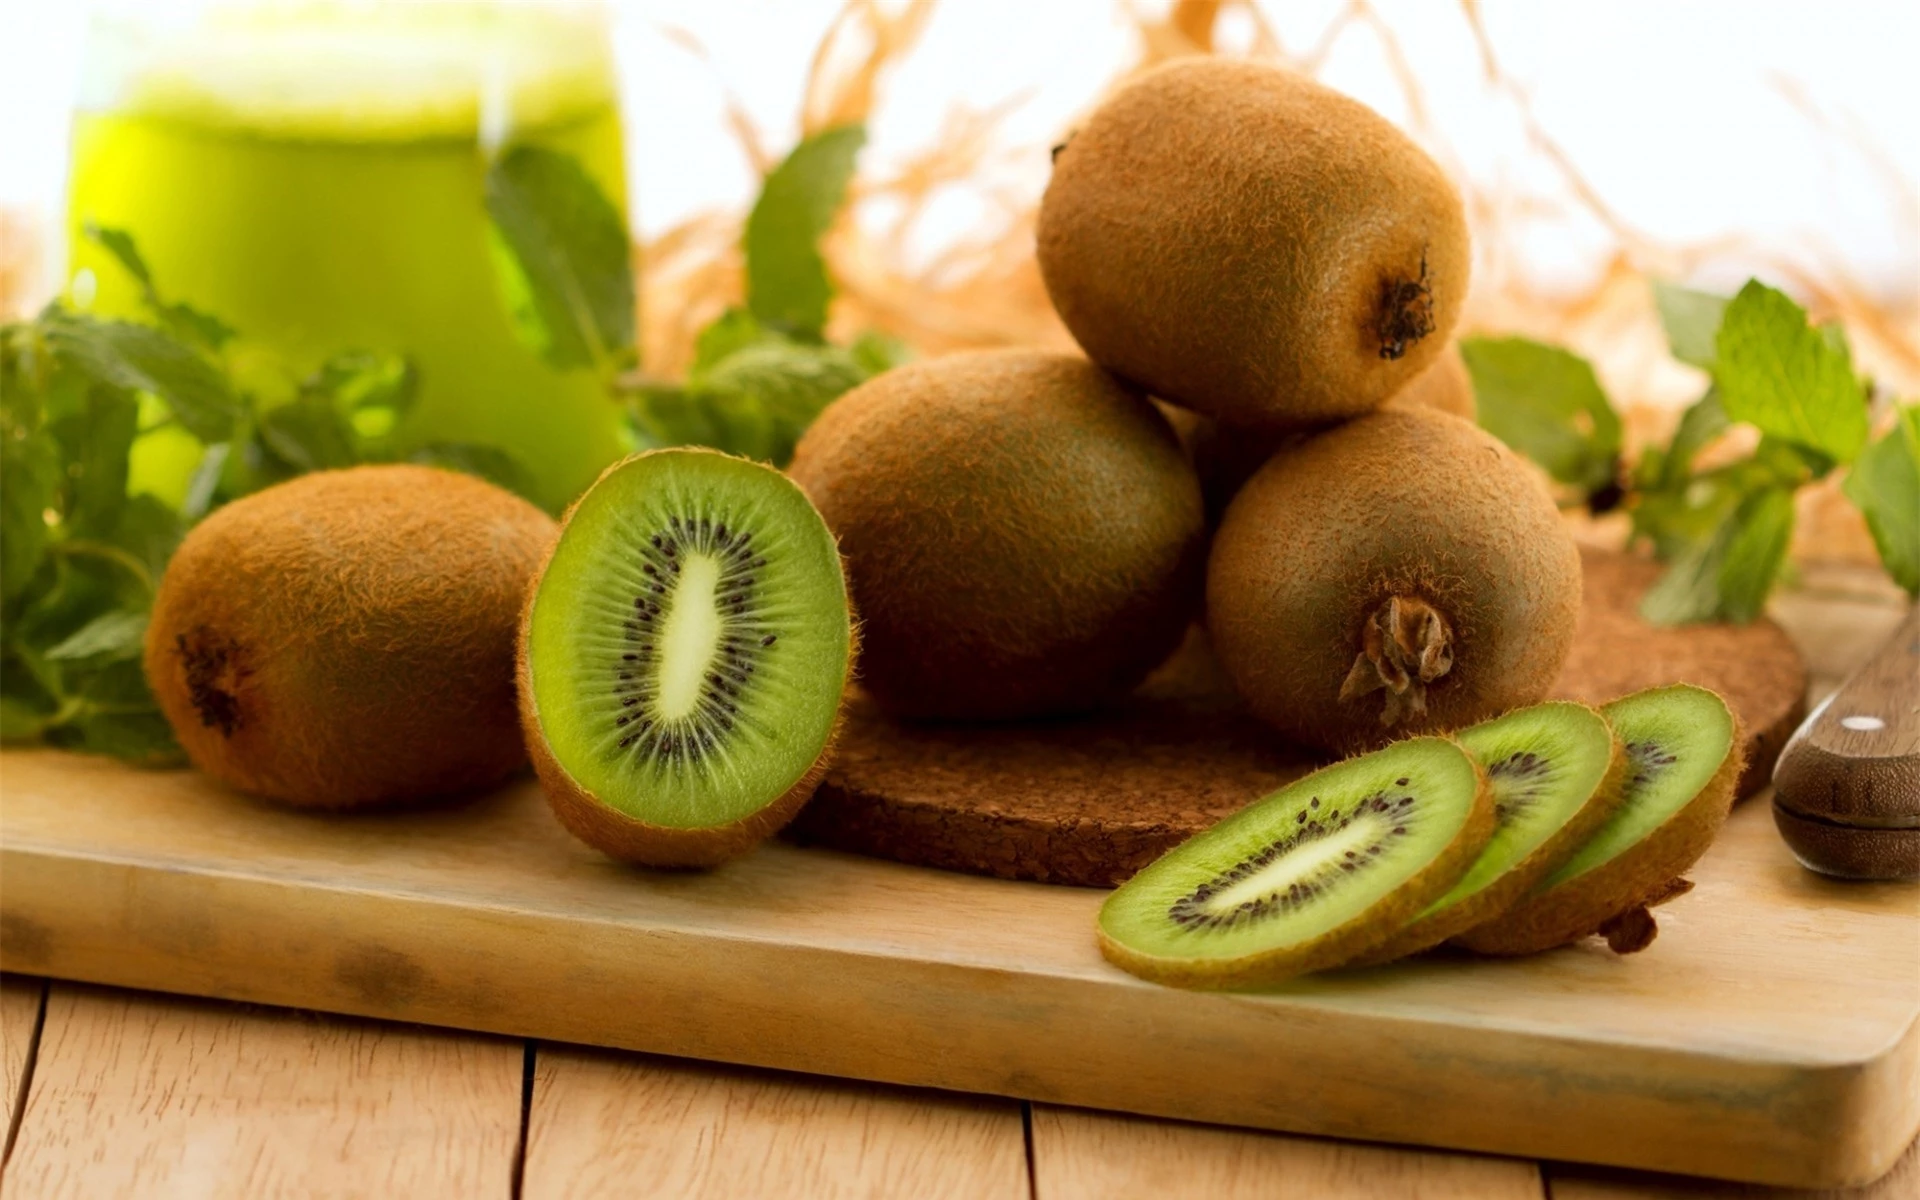 Quả kiwi cung cấp rất nhiều chất dinh dưỡng cho bà bầu và thai nhi